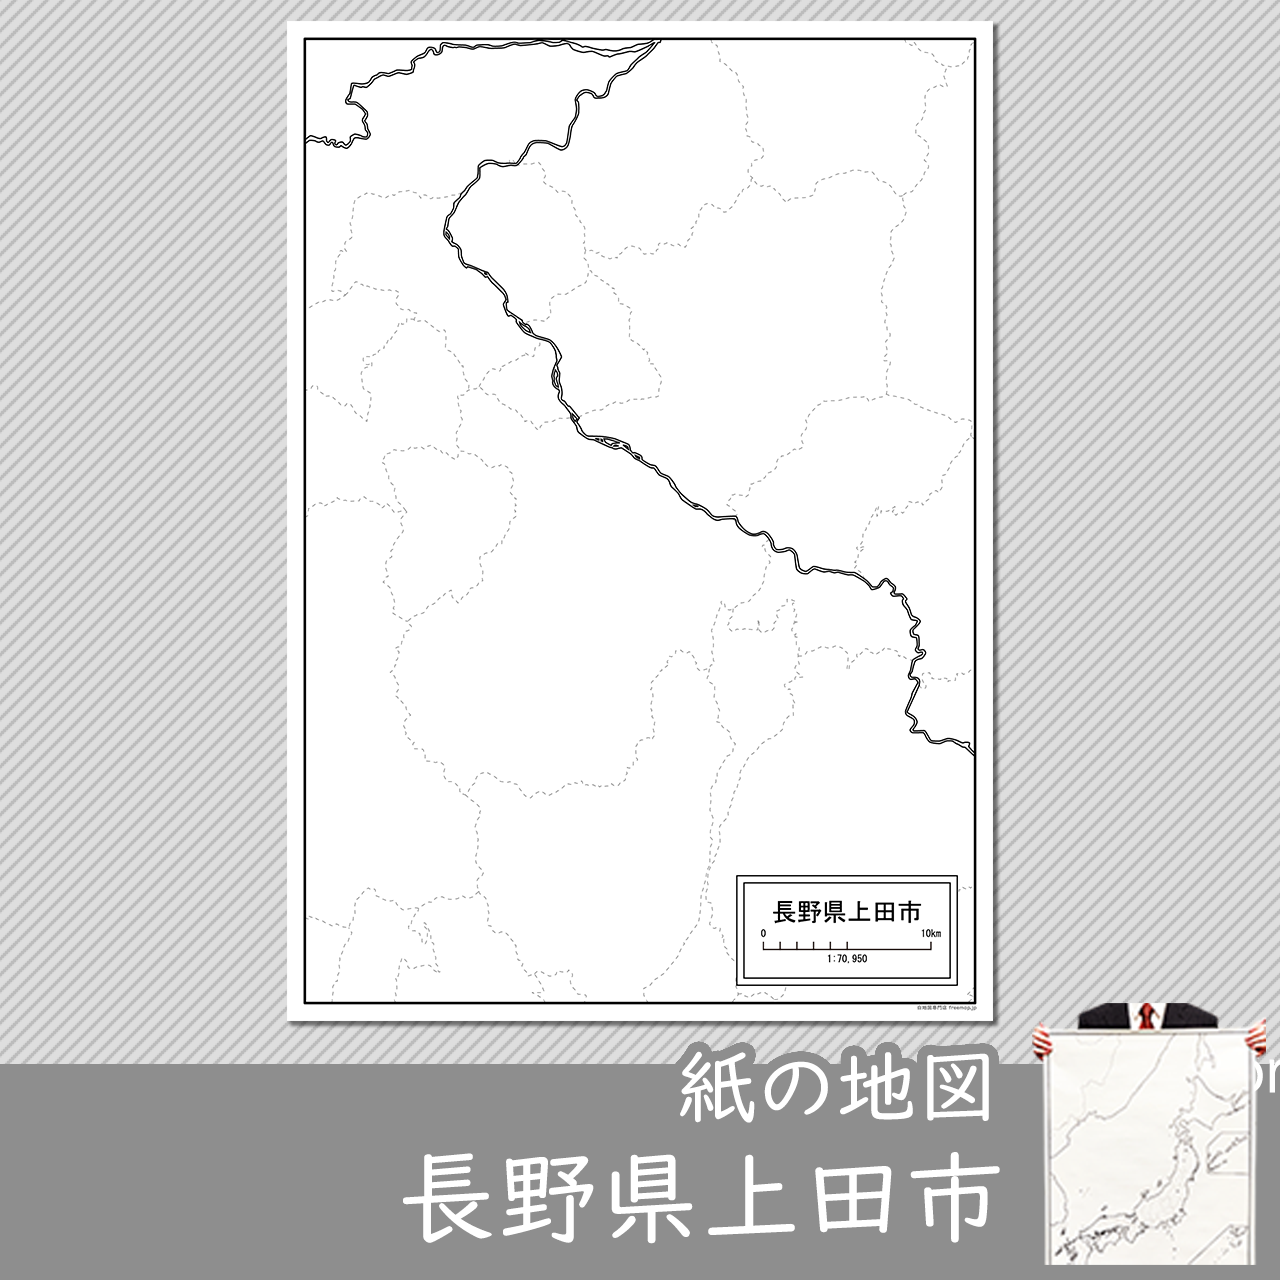 上田市の紙の白地図のサムネイル